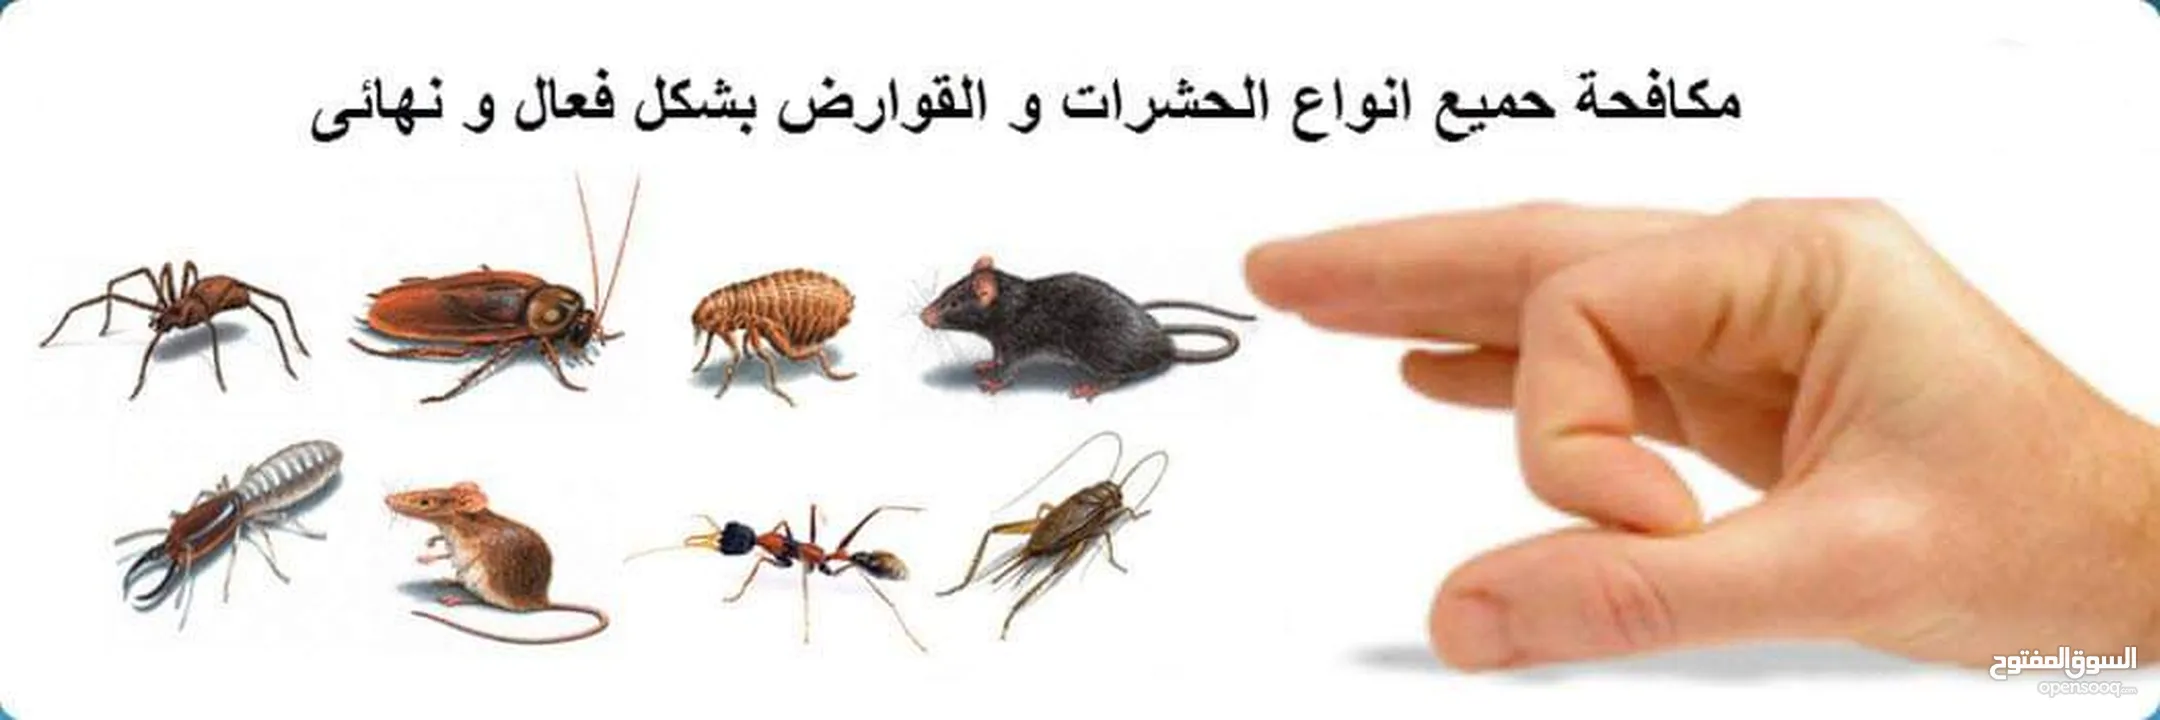 مكافحة الحشرات والقوارض والزواحف والرمه والصراصير والبق